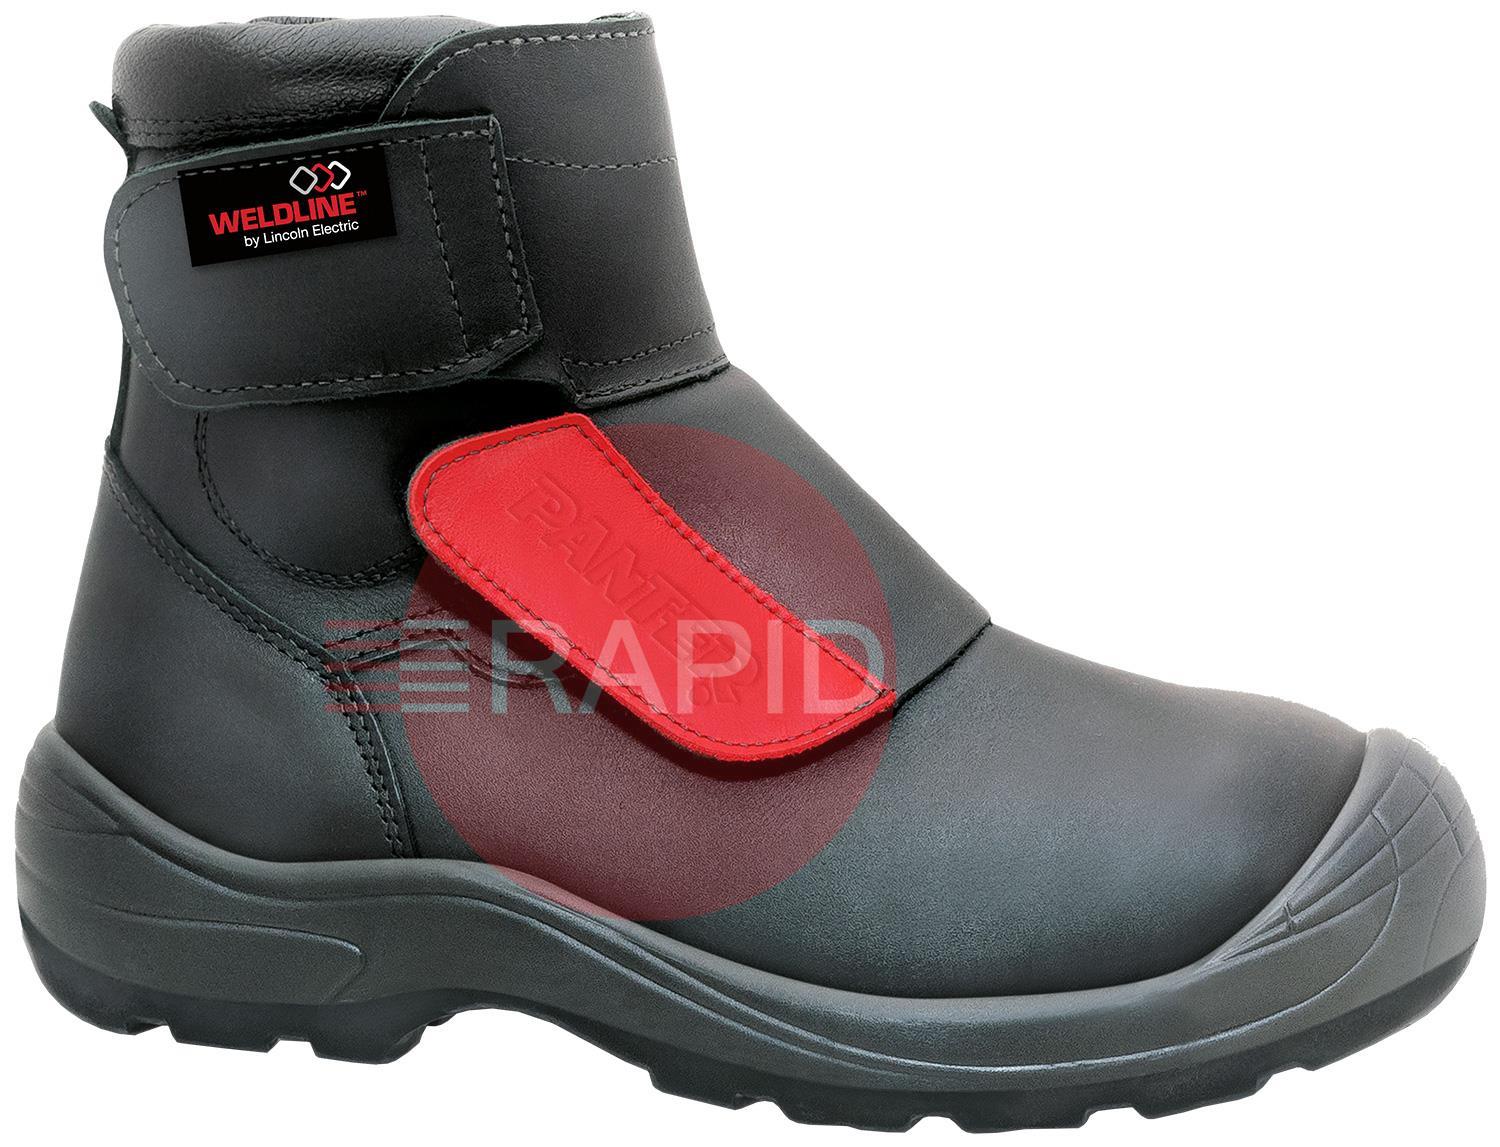 W49S3T42  Weldline Panter Fusion 49 S3 Welding Shoes - Size 42